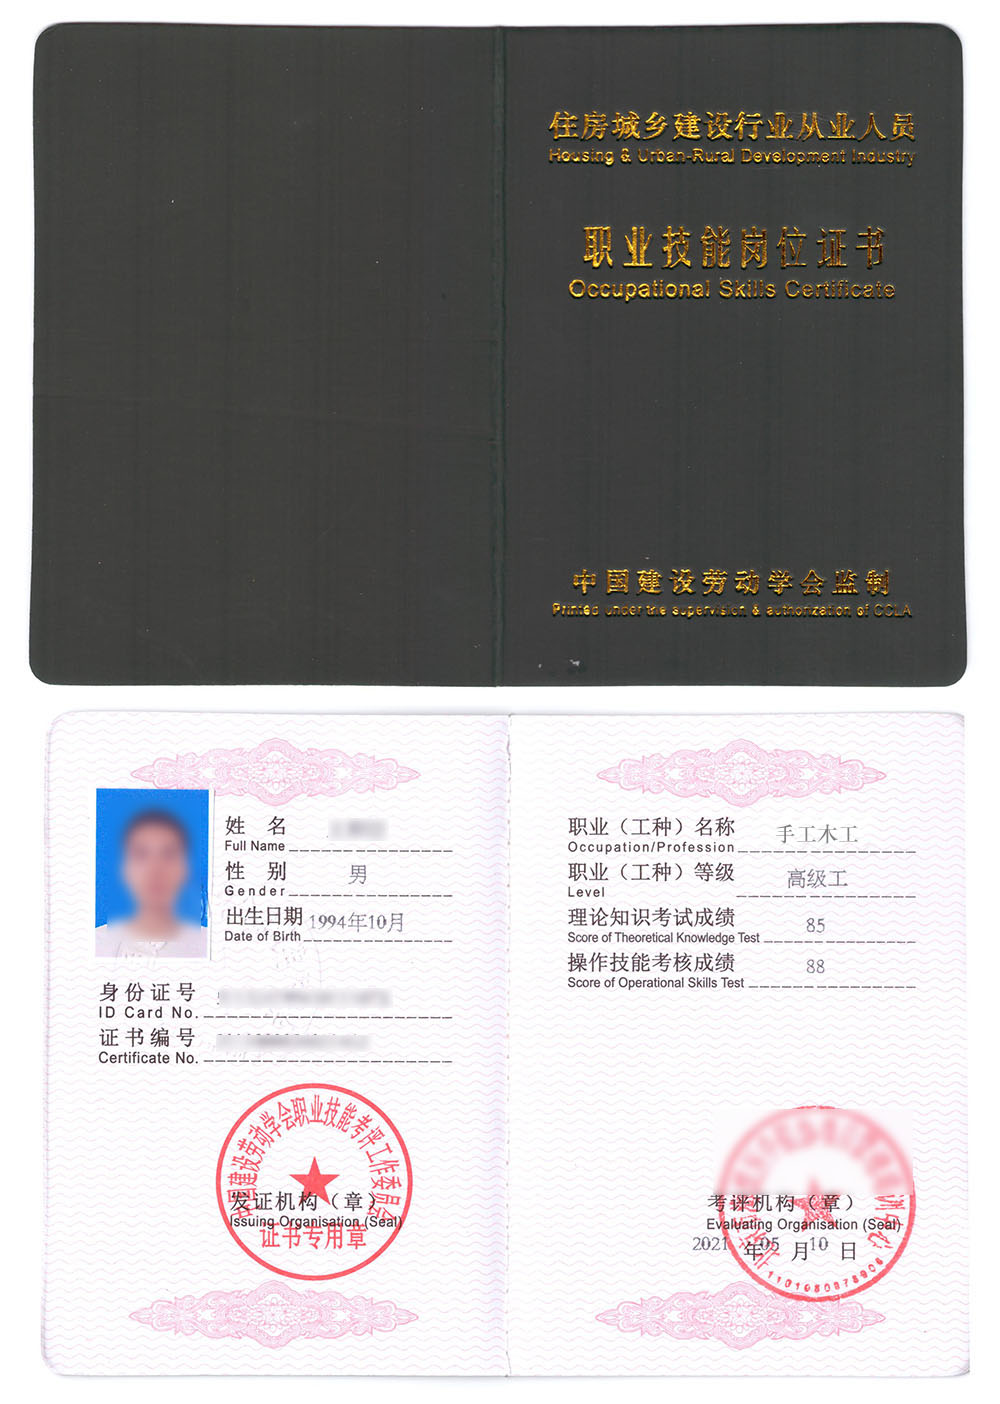 中国建设劳动学会 职业技能岗位证书 手工木工证书样本